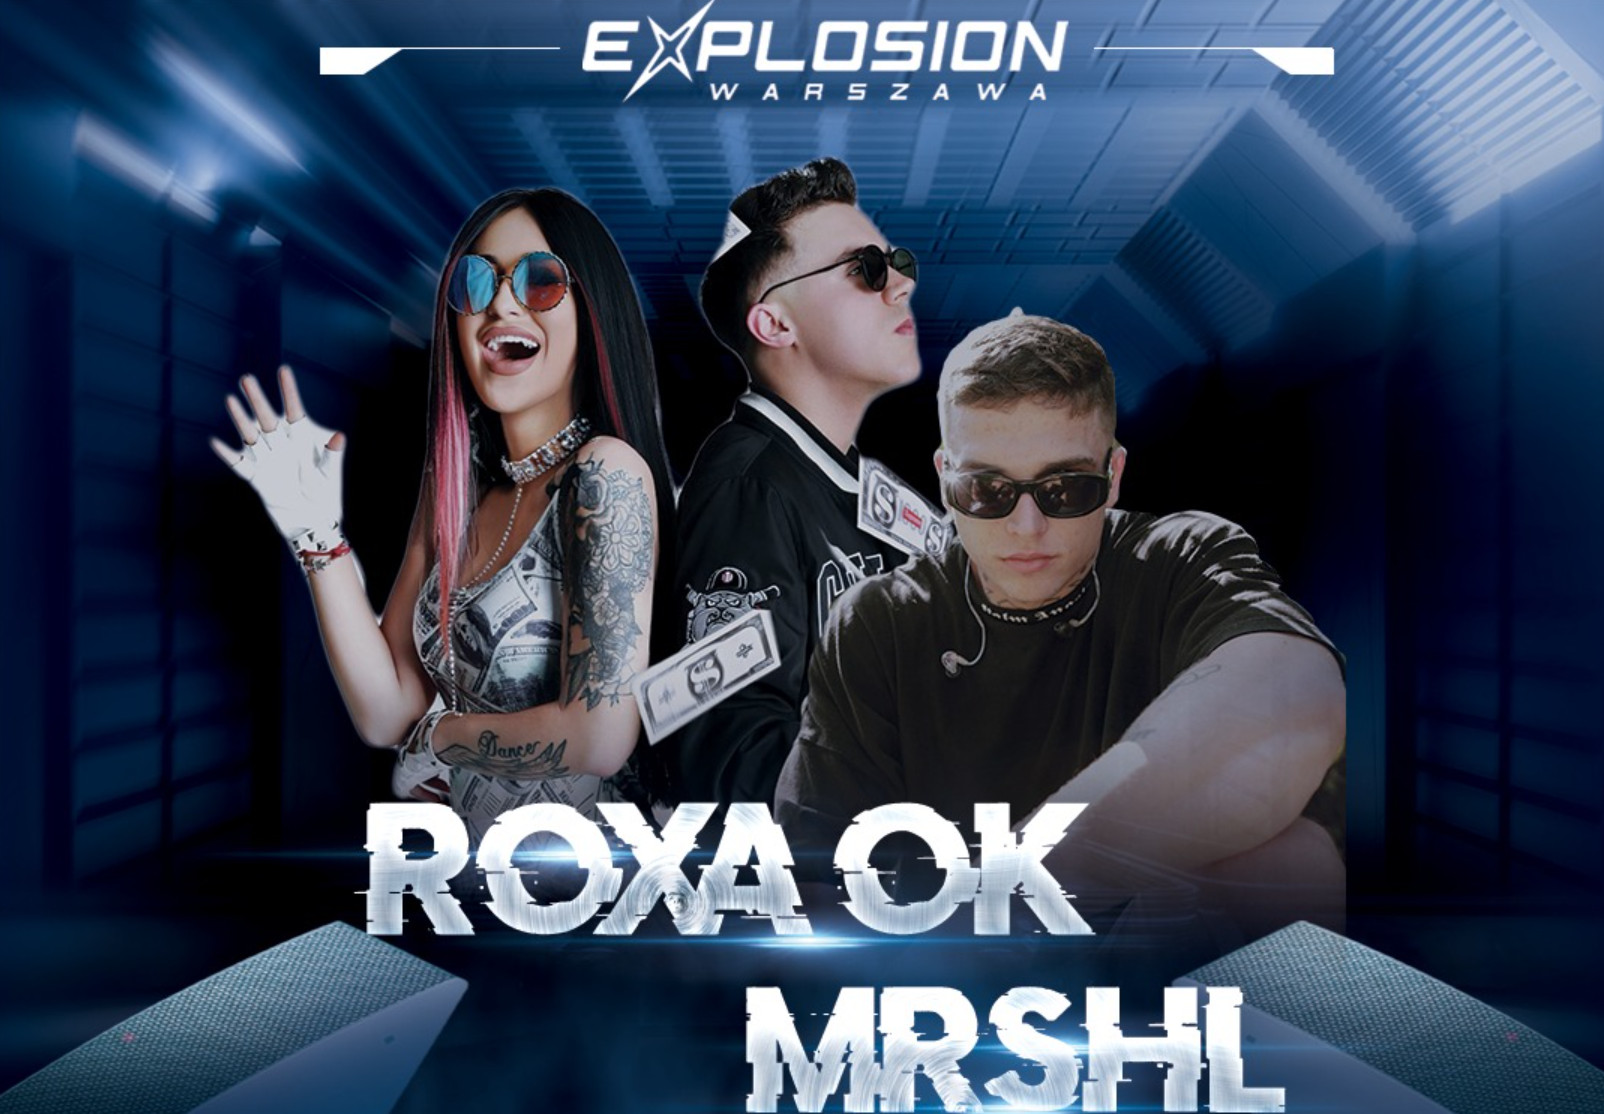 Roxaok podbije klub Explosion! Koncert młodej gwiazdy disco polo już 2 marca!